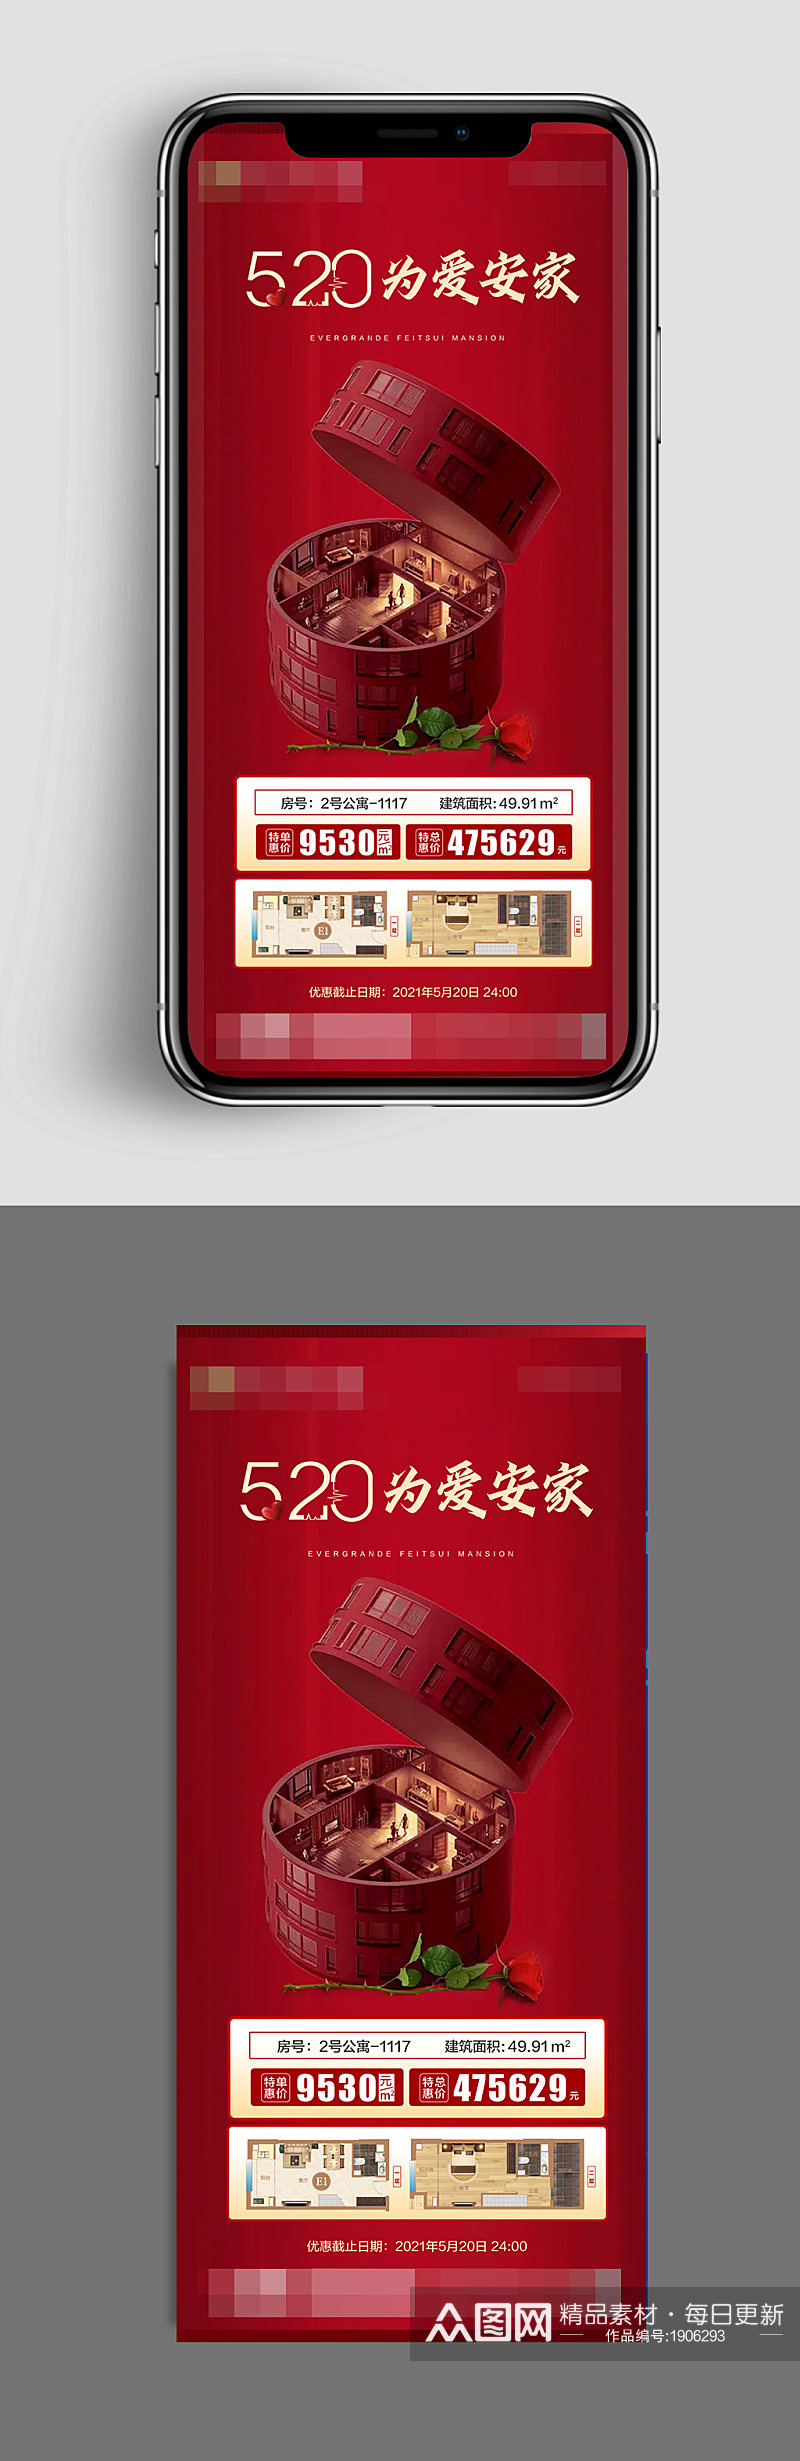 520红色大气地产特价房手机海报素材